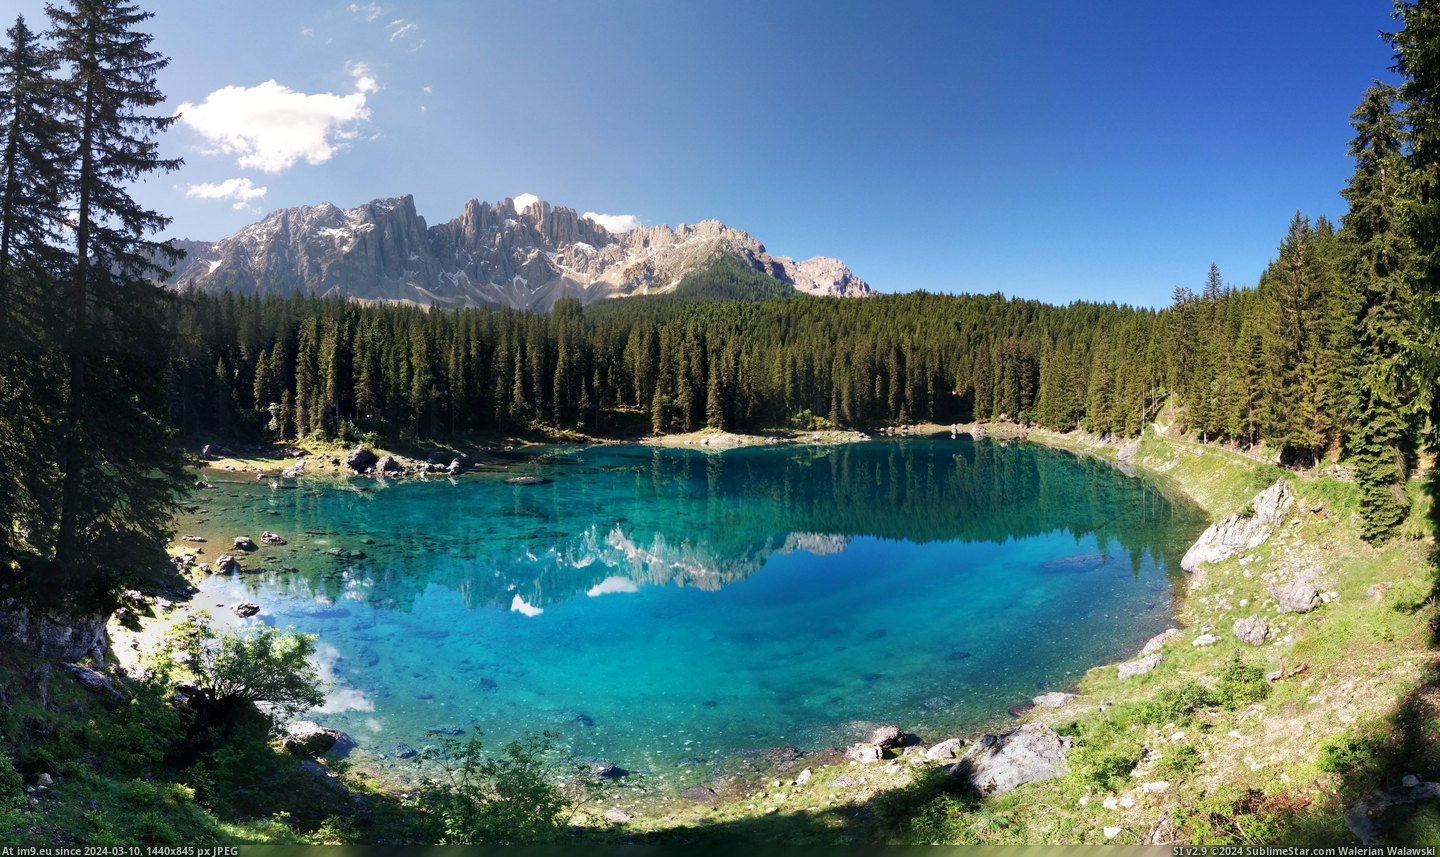  #Lago  [Earthporn] Lago di Carezza [7720x4540] Pic. (Image of album My r/EARTHPORN favs))